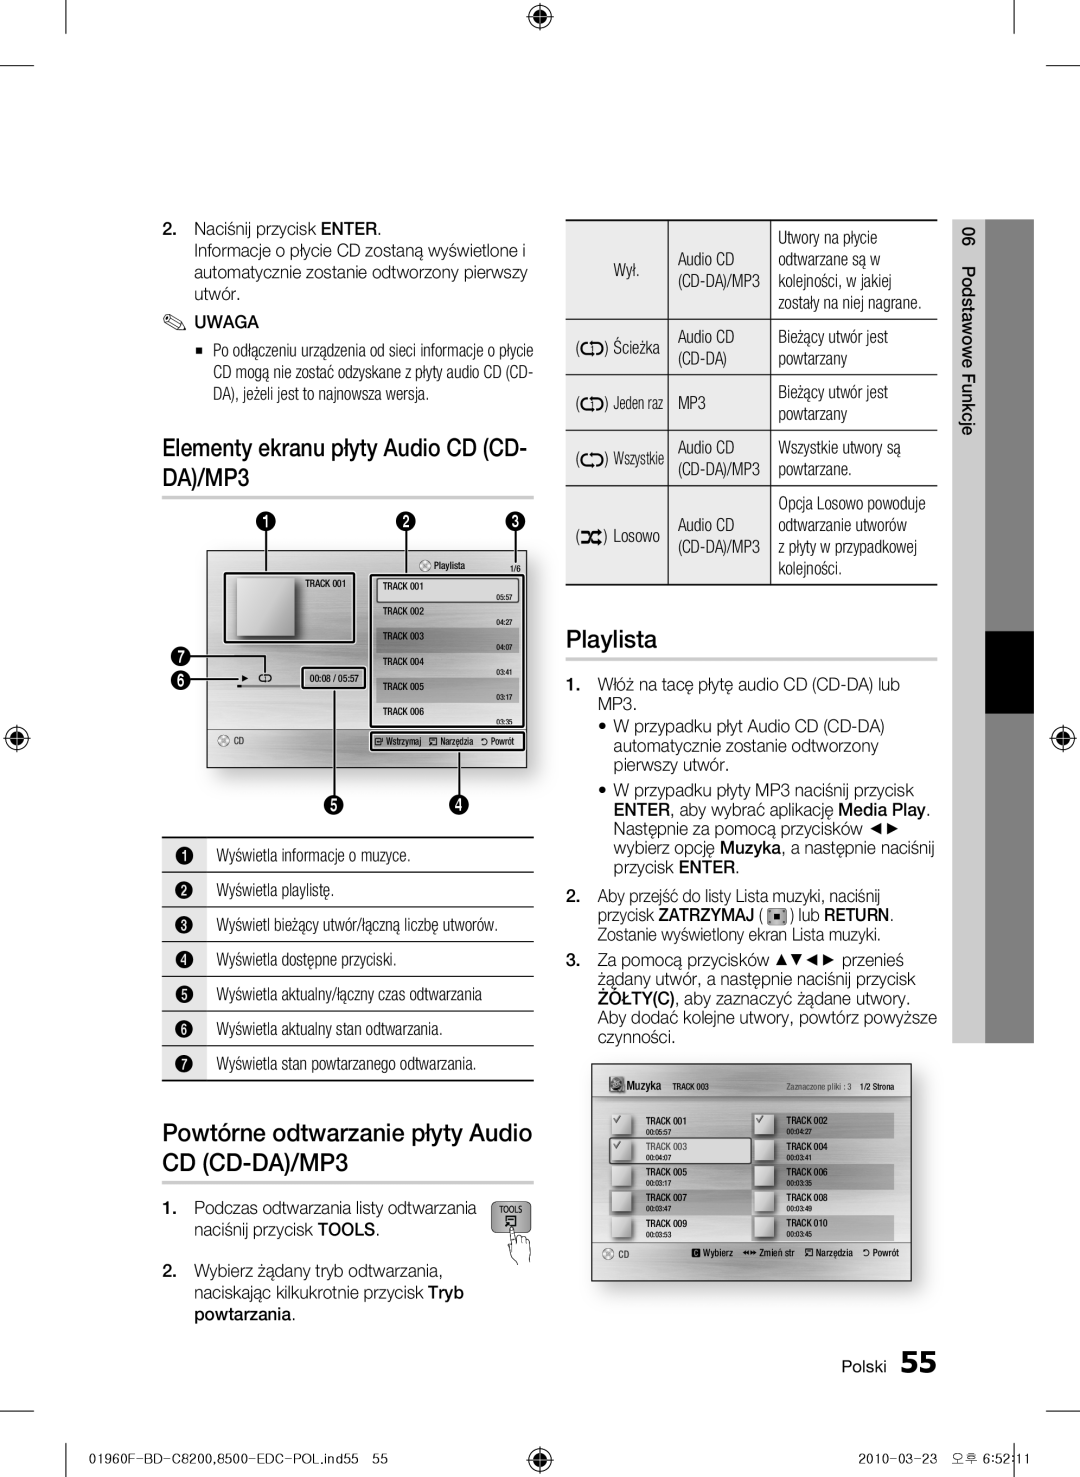 Samsung BD-C8200/EDC Elementy ekranu płyty Audio CD CD- DA/MP3, Powtórne odtwarzanie płyty Audio CD CD-DA/MP3, Playlista 